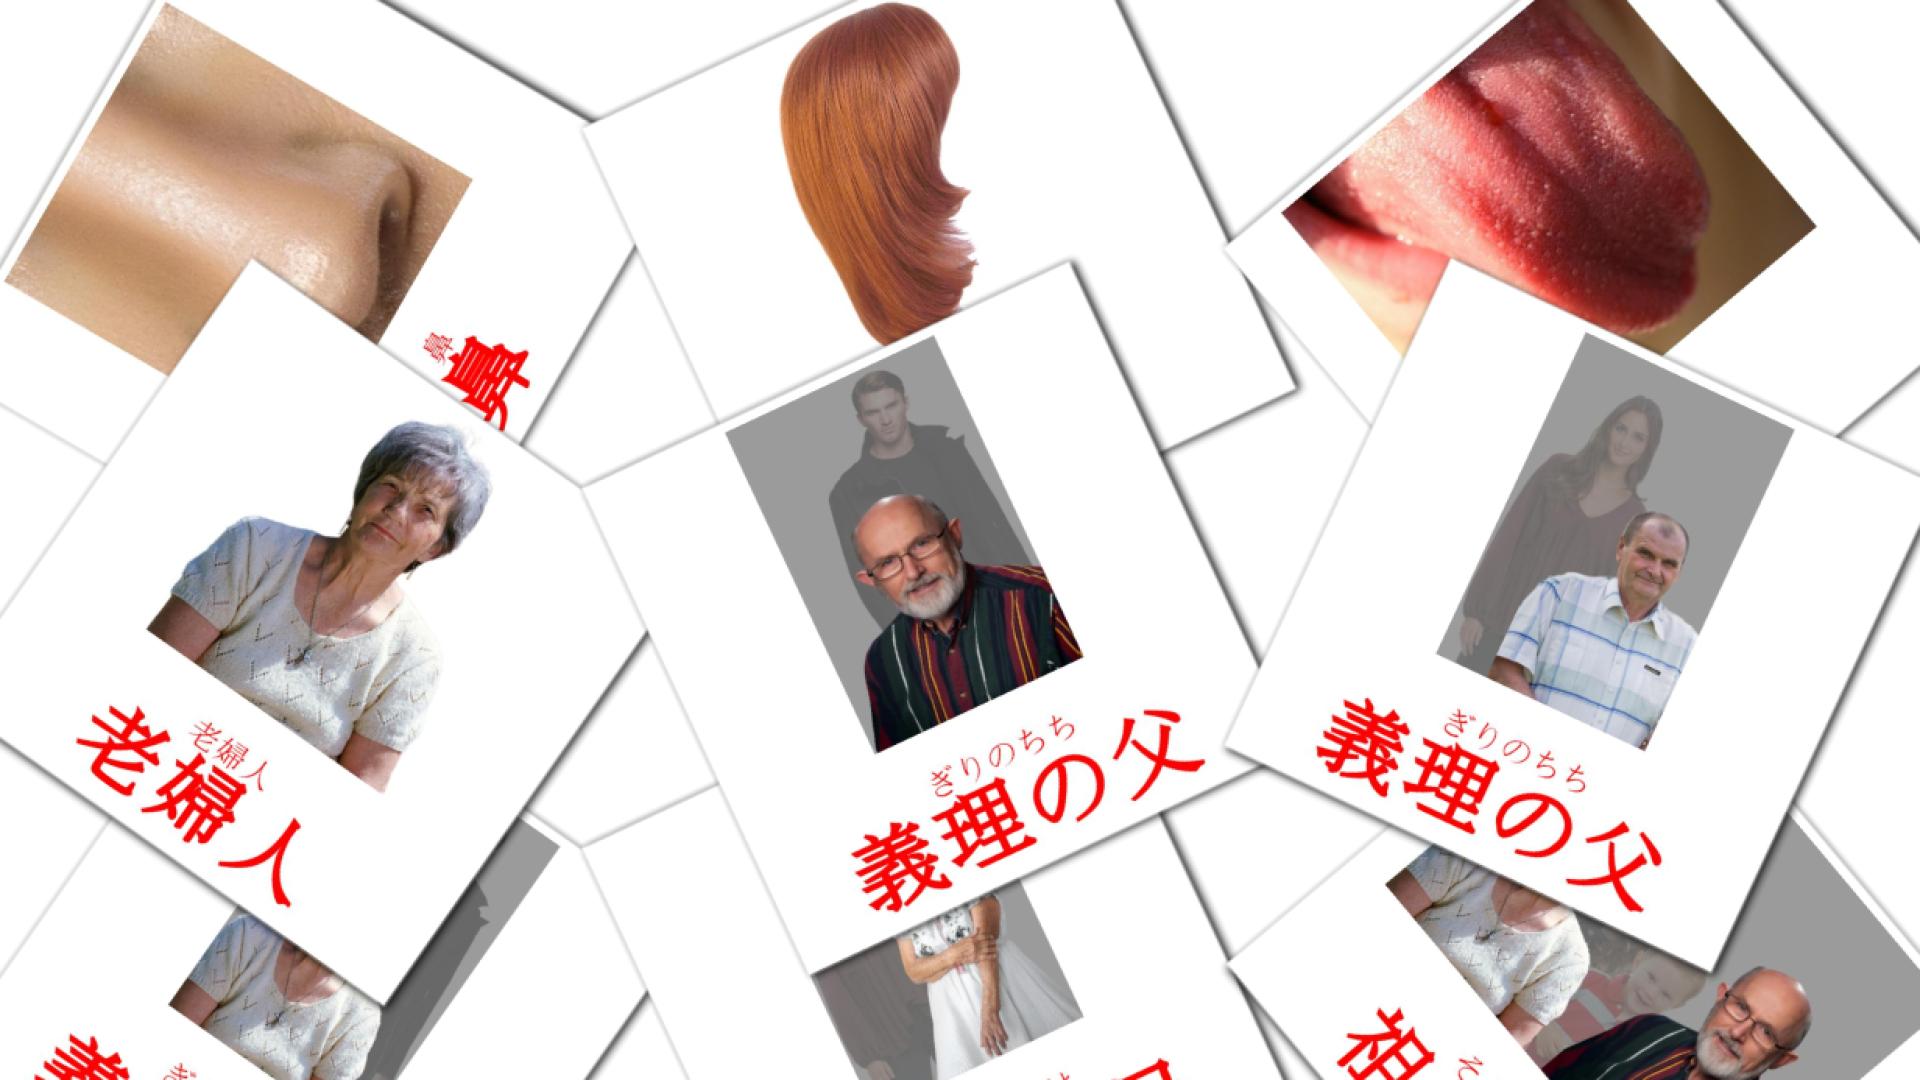 人 japanese vocabulary flashcards